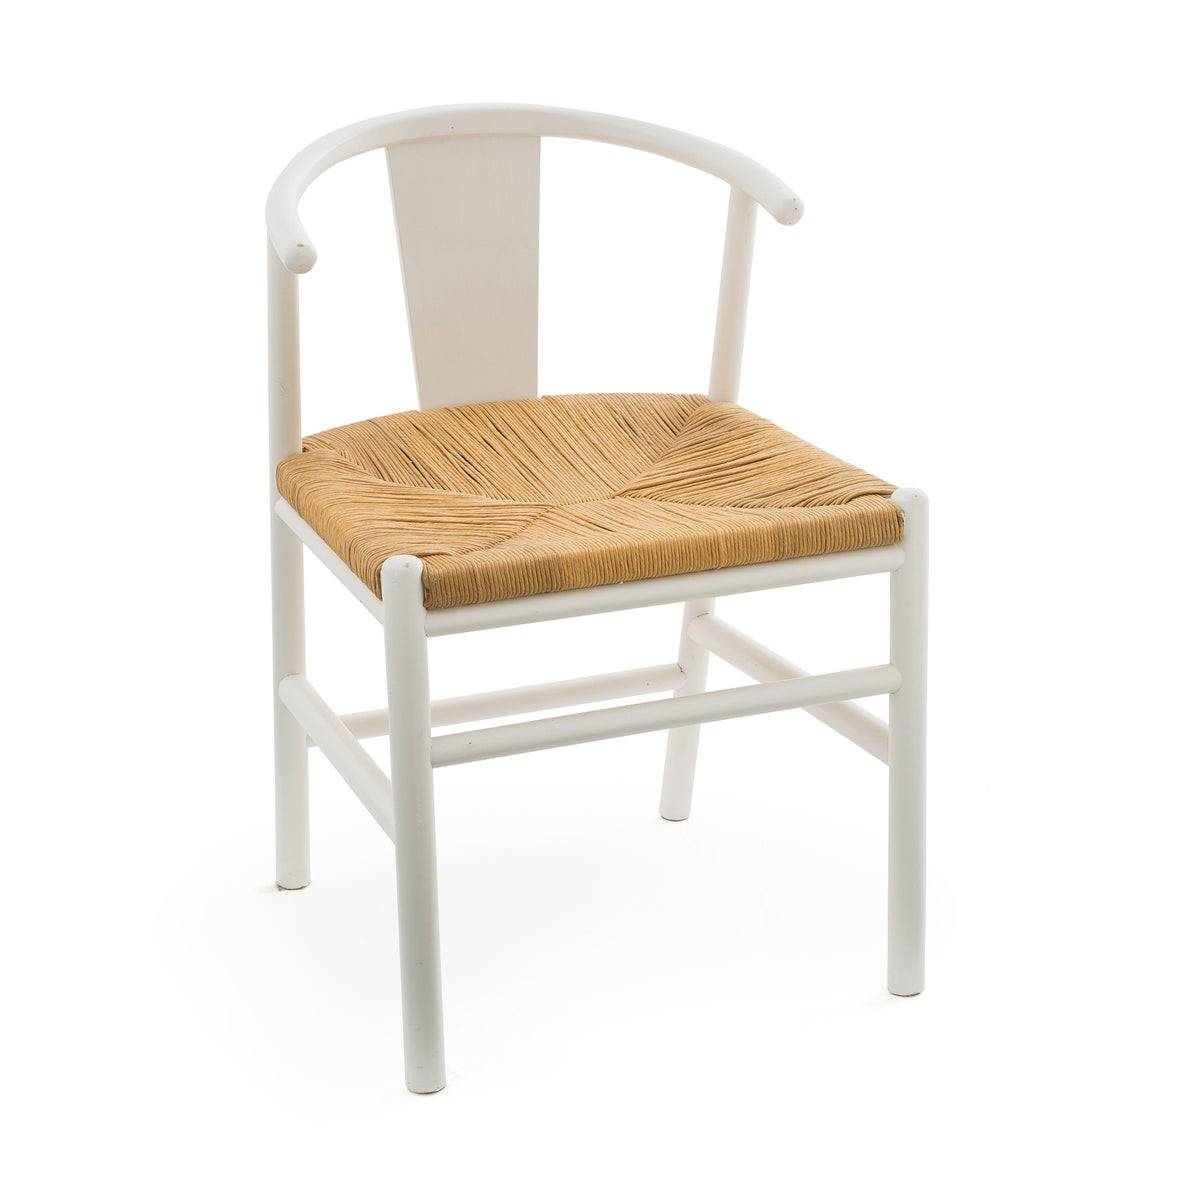 Silla nórdica con asiento trenzado y estructura en color blanco de La Redoute